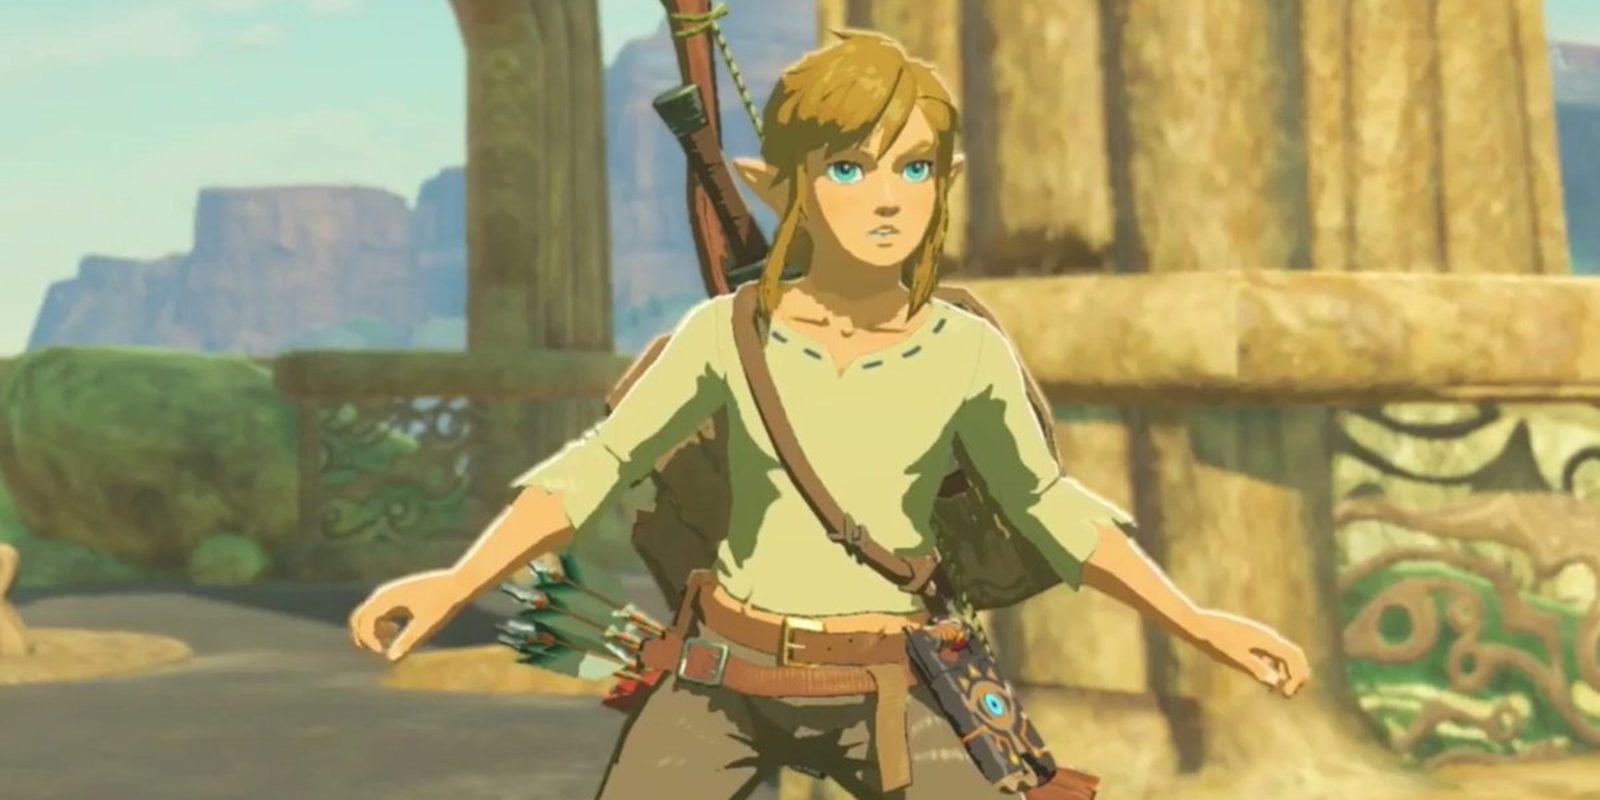 Las ventas de Wii U aumentan gracias a 'The Legend of Zelda: Breath of the Wild'